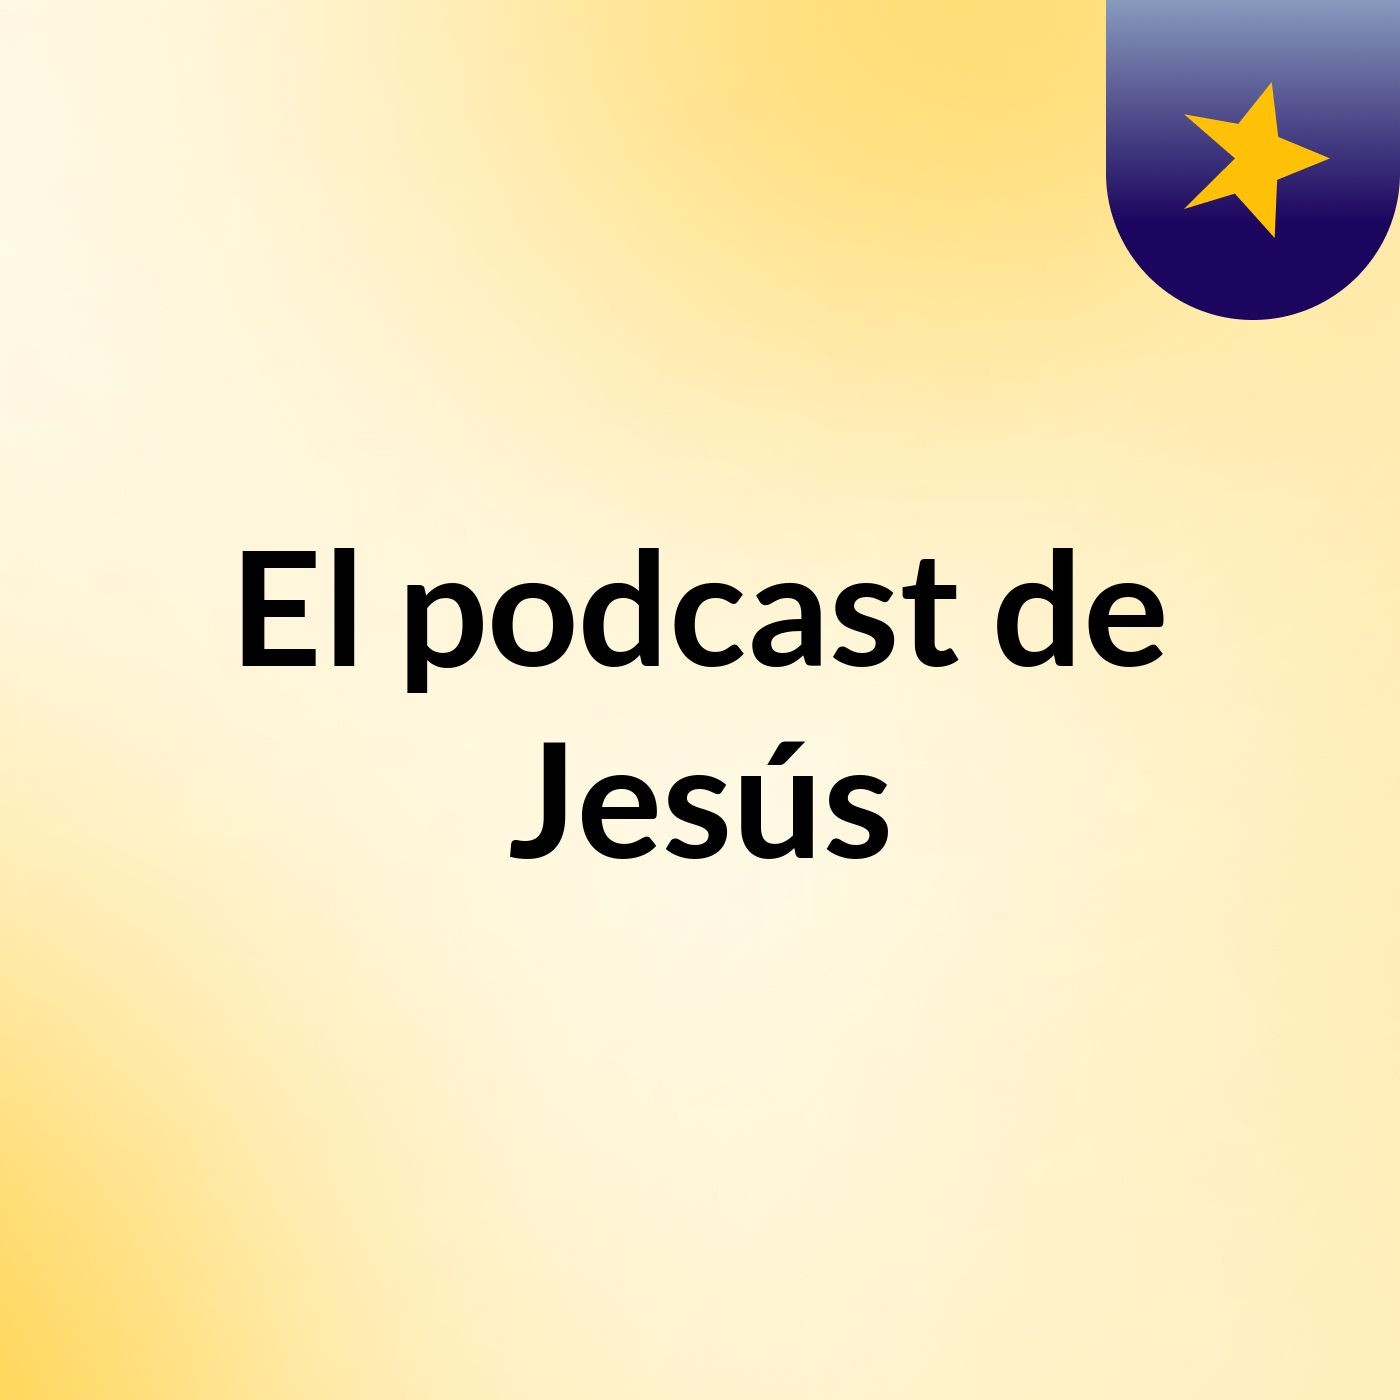 Episodio 5 - El podcast de Jesús